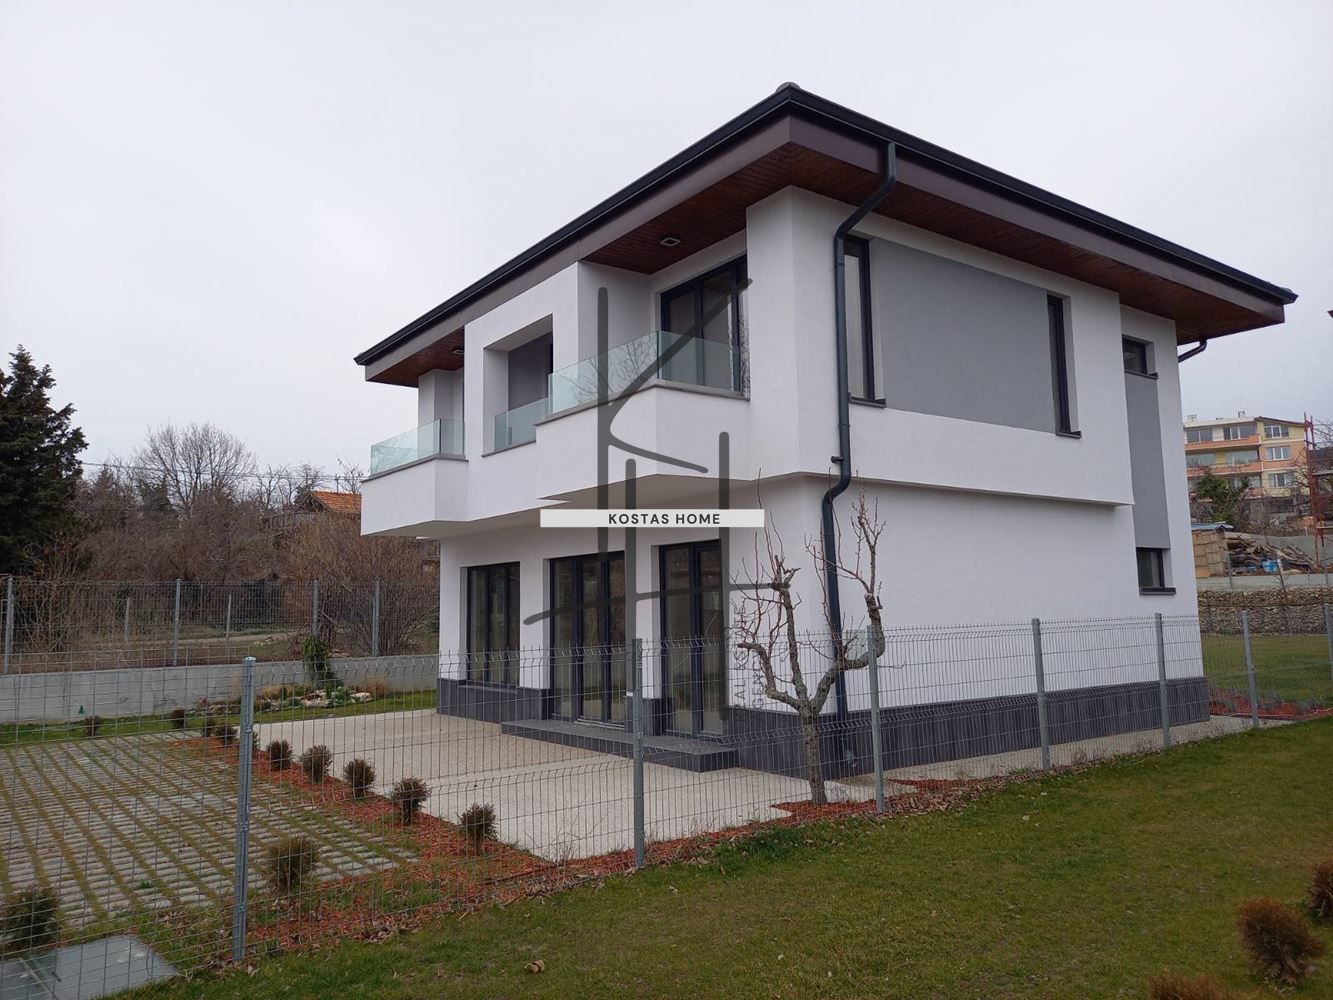 Къща в Варна-м-т Св. Никола площ 160 цена 375000